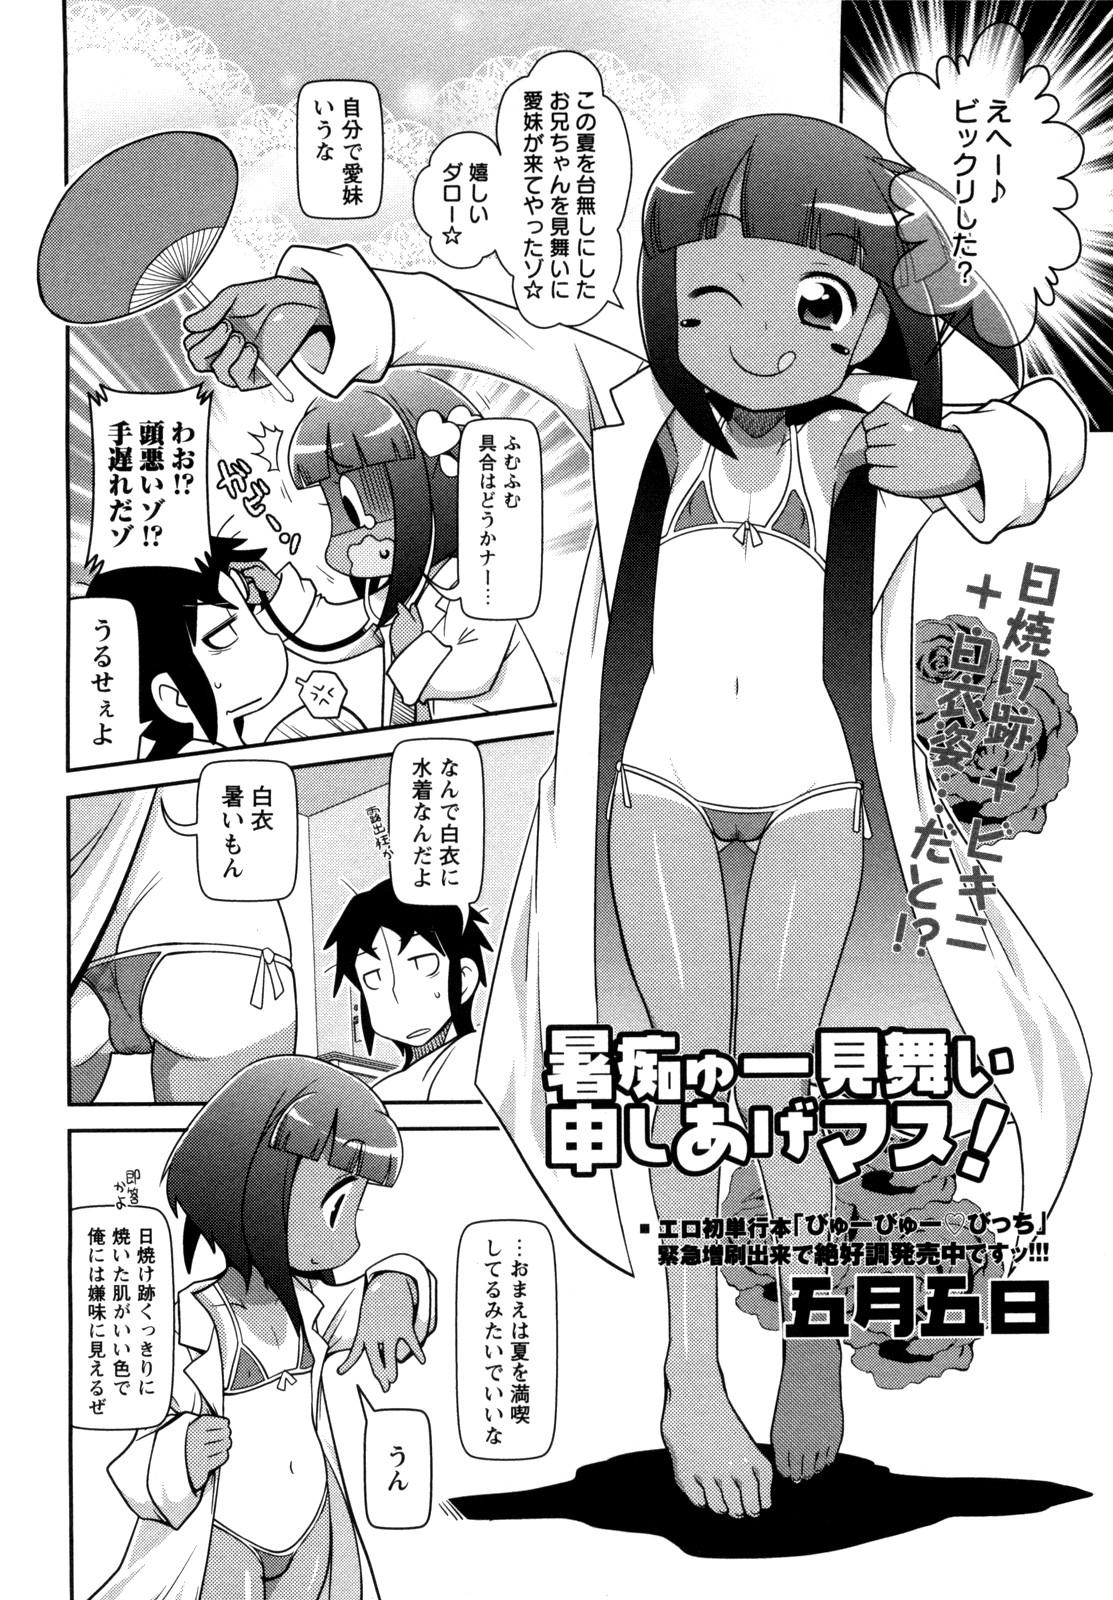 Hot Women Having Sex Shochuu Mimai Moushiagemasu! Culonas - Page 2